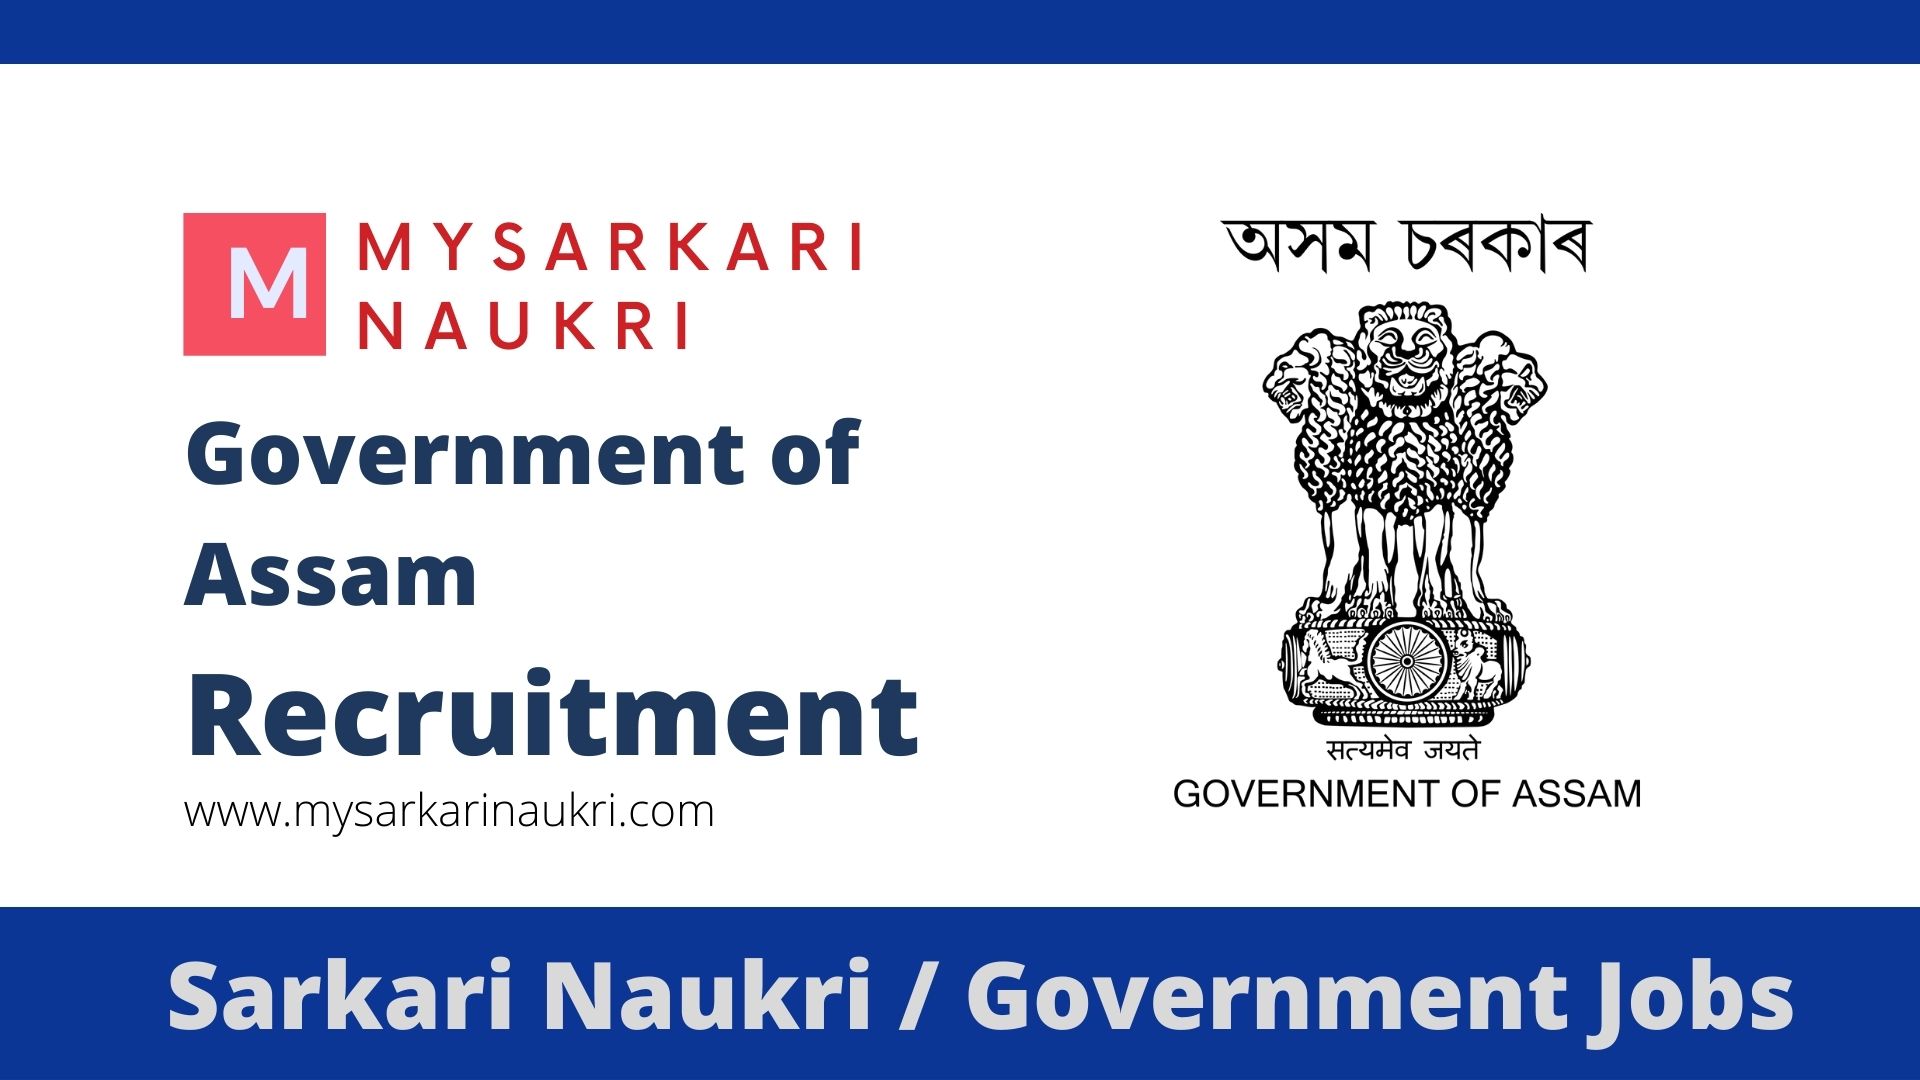 Government of Assam Job Recruitment